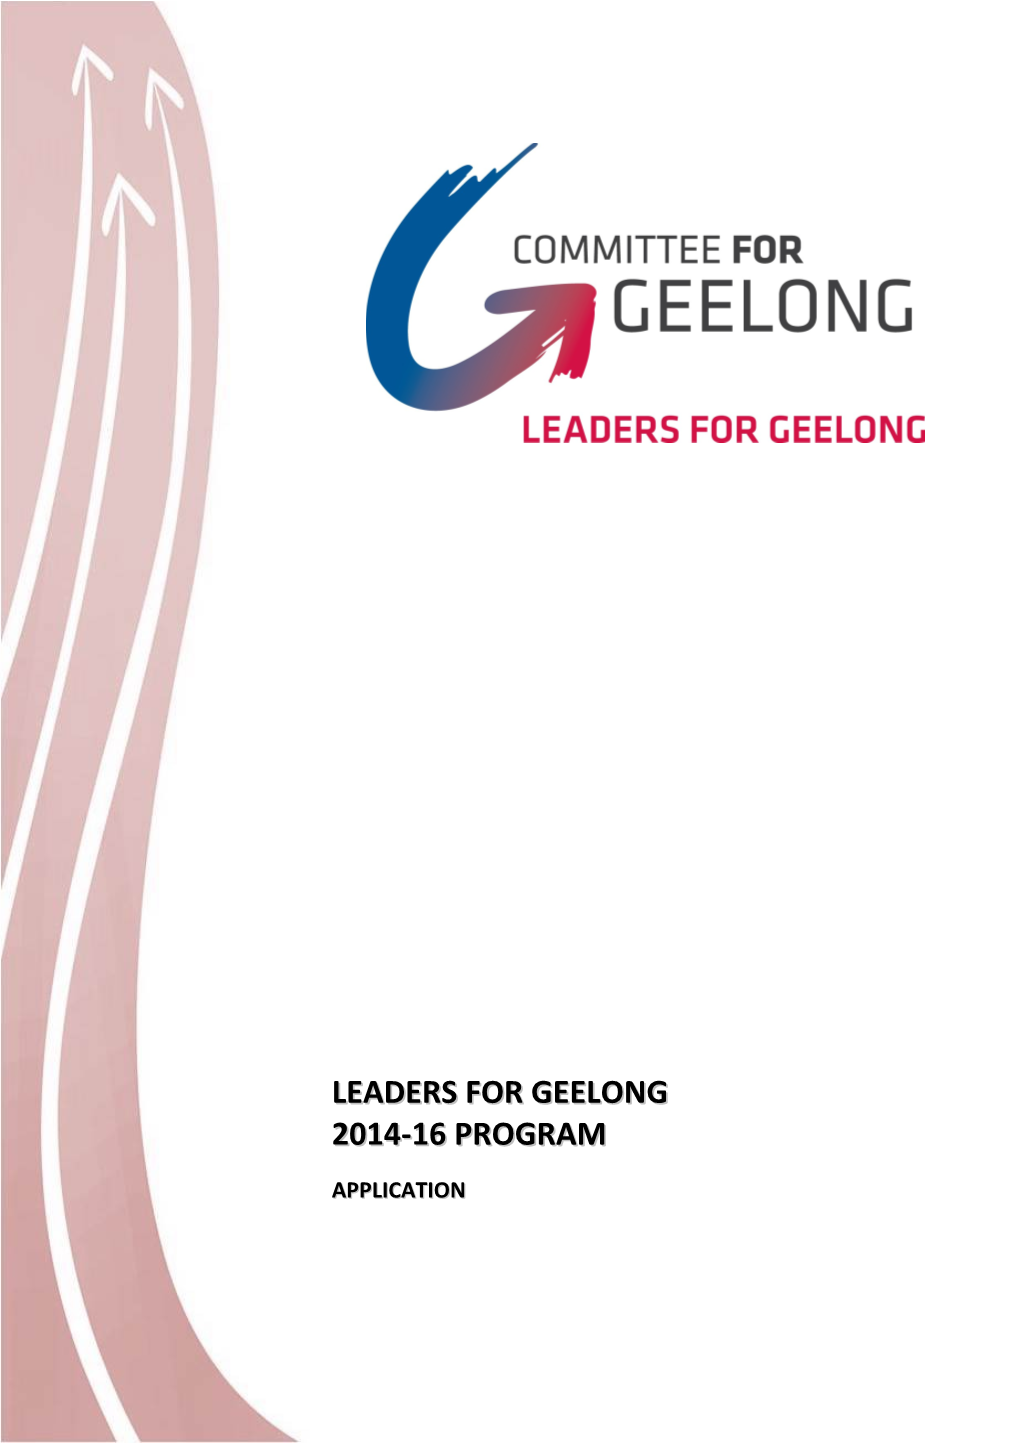 Leaders for Geelong